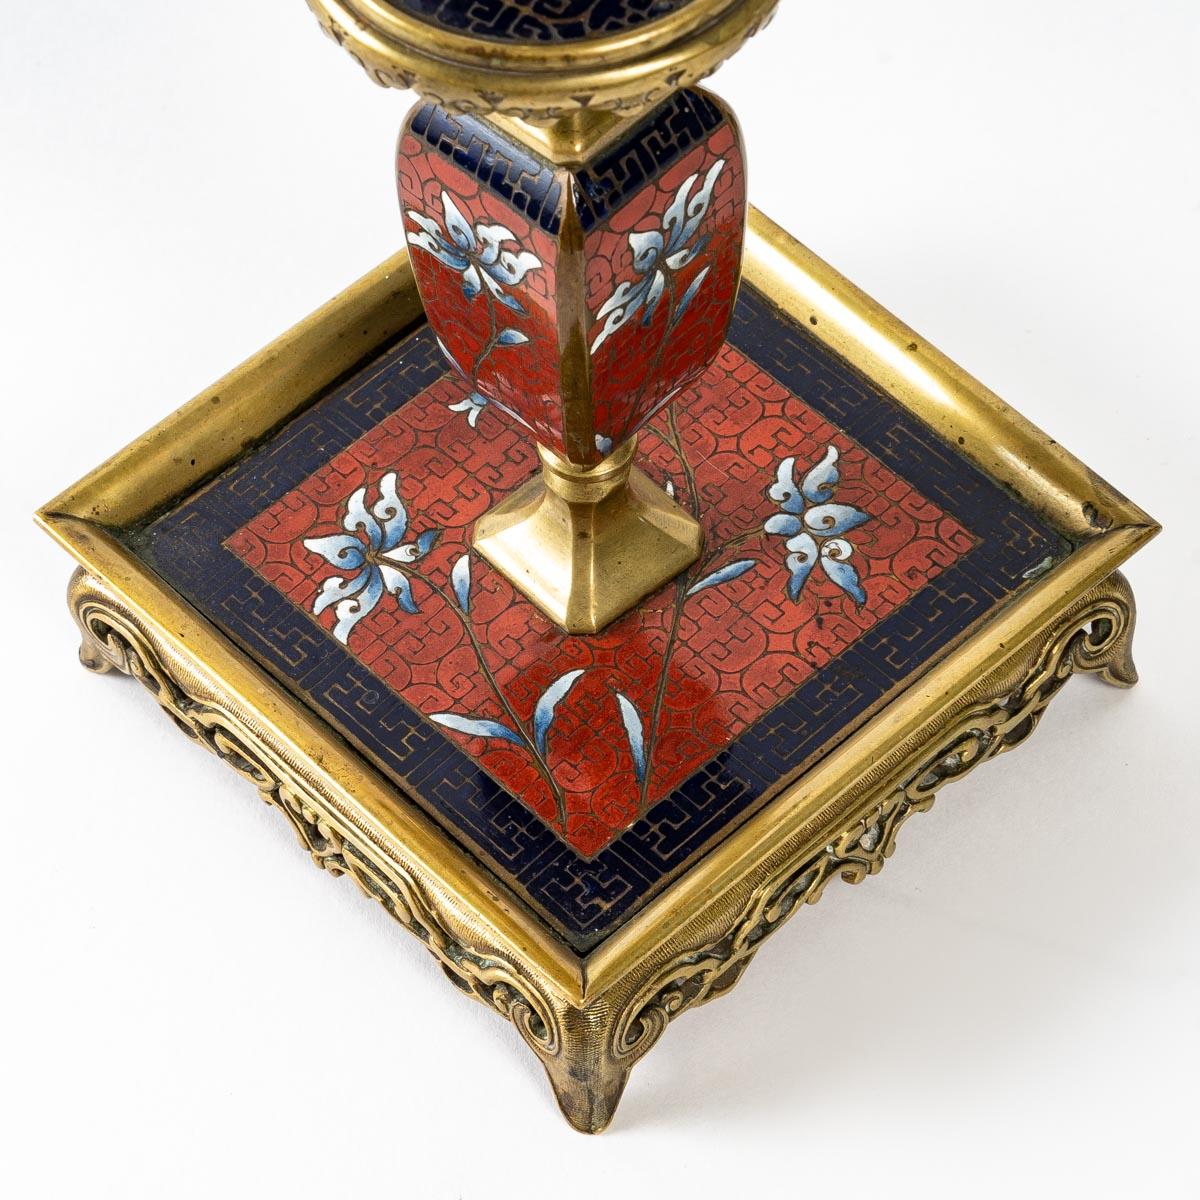 Schreibtischset aus Cloisonné-Bronze, 19. Jahrhundert
Schreibtischgarnitur aus Cloisonné-Bronze, bestehend aus einem Paar Kerzenständer, einem Tintenfass und einem Federhalter, Napoleon III.
Maße: Kerzenständer - H: 20 cm, B: 10 cm, T: 10